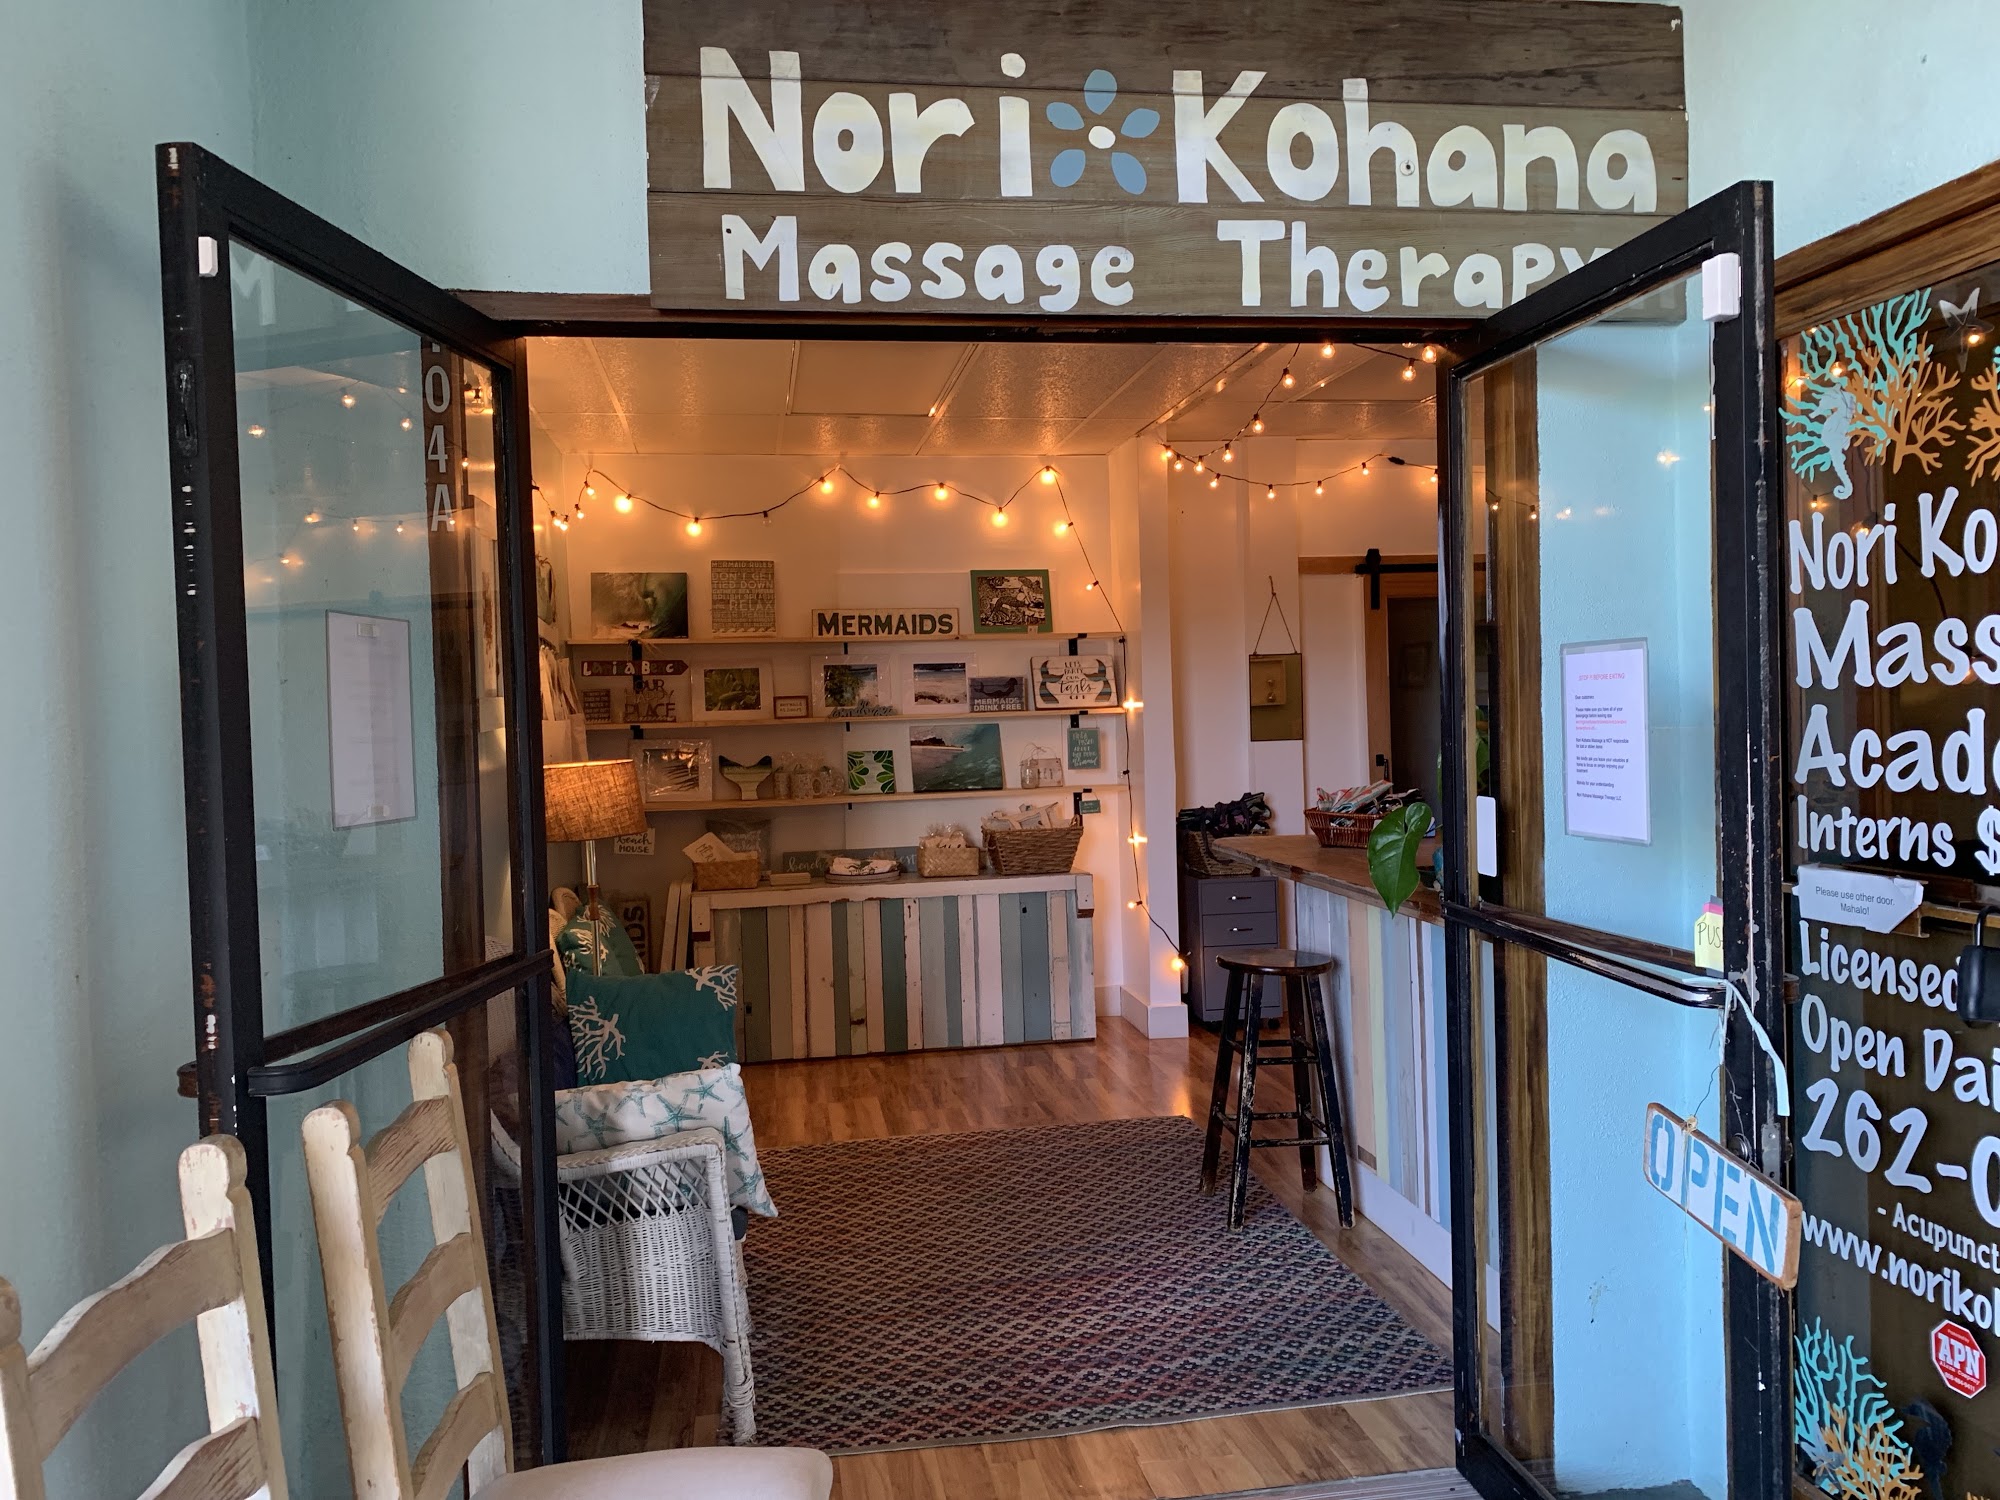 Nori Kohana Massage Therapy/academy